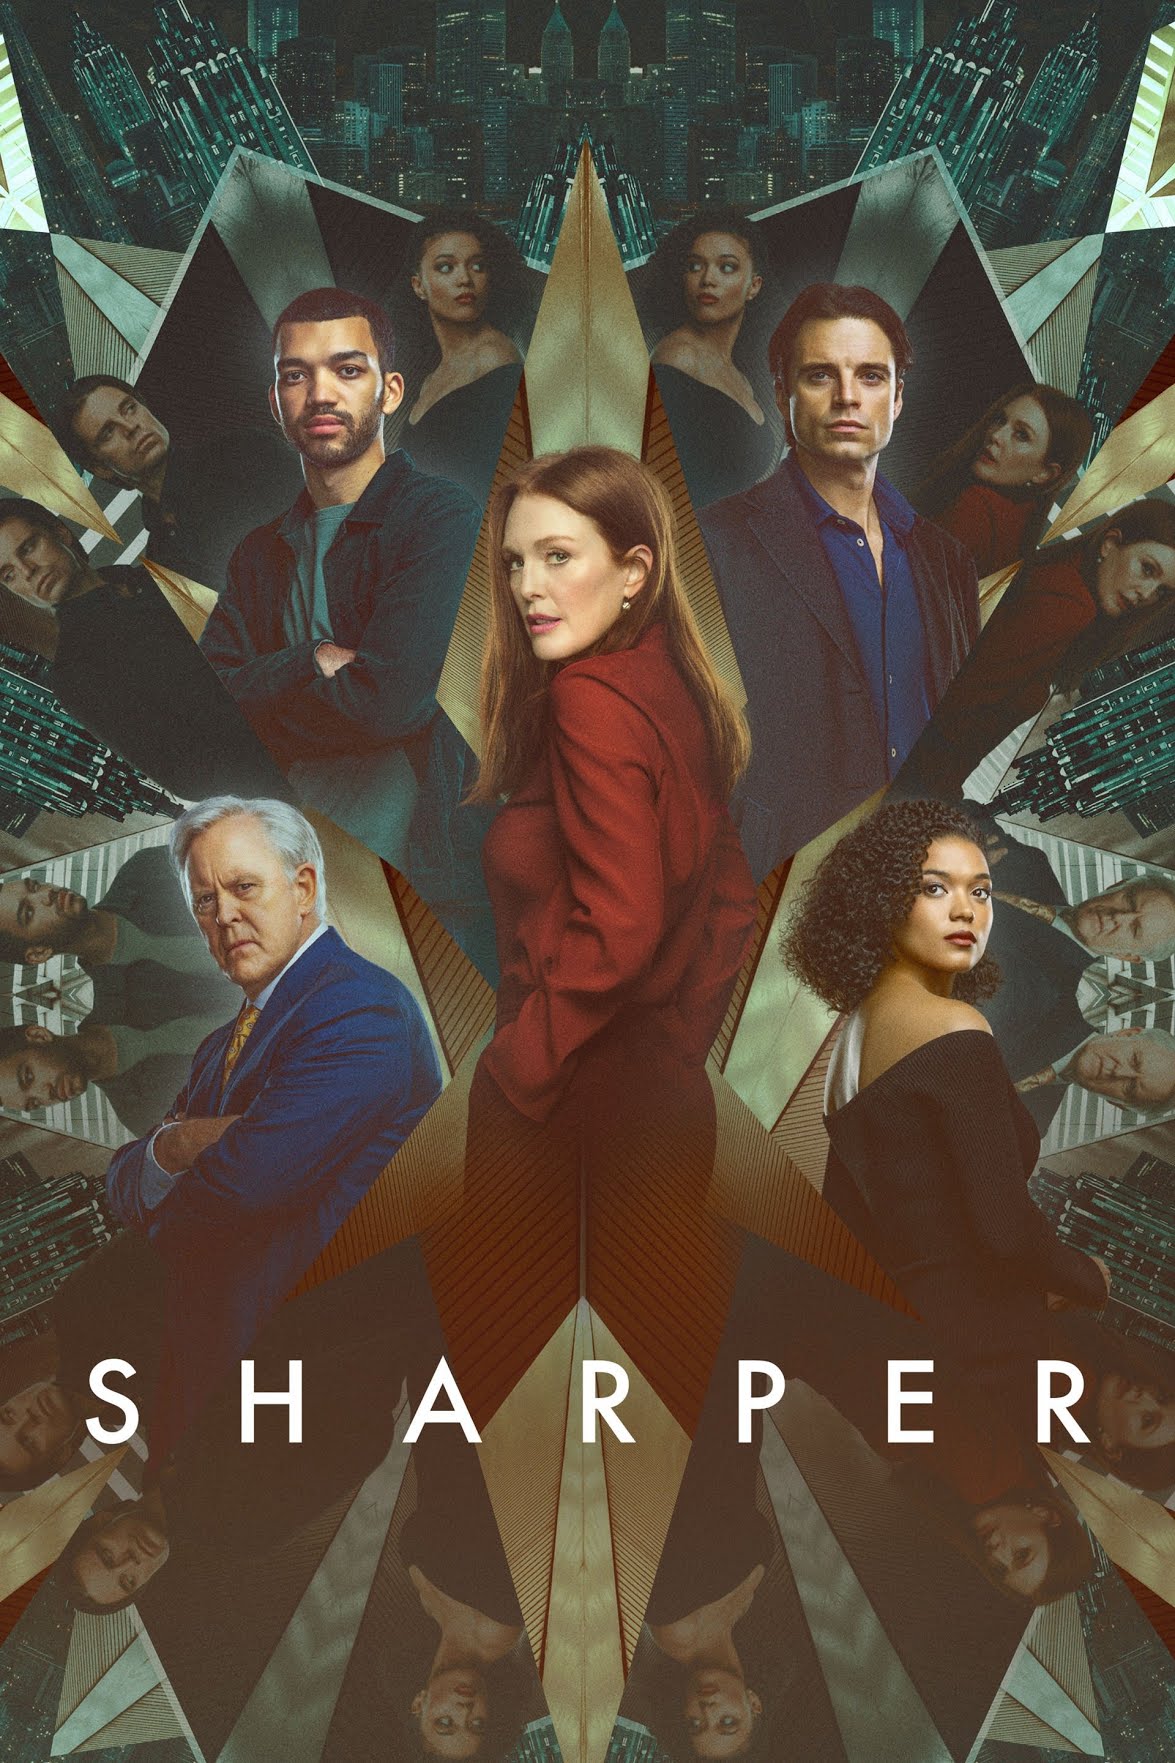 [ฝรั่ง] Sharper (2023) ชาร์ปเปอร์ [1080p] [พากย์อังกฤษ 5.1] [Soundtrack บรรยายไทย + อังกฤษ] [เสียงอังกฤษ + ซับไทย] [PANDAFILE]